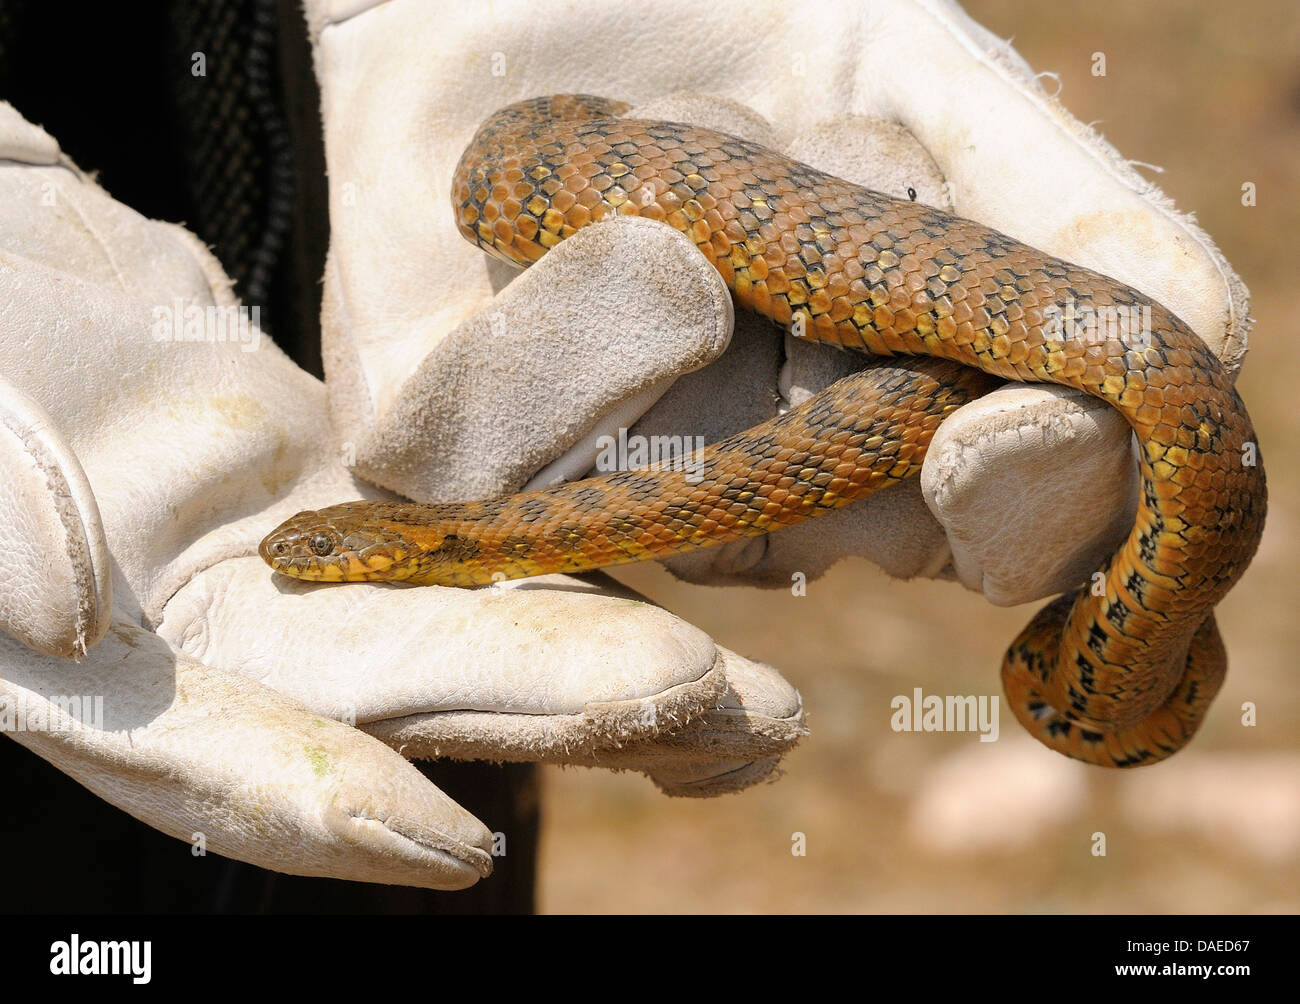 Viperine snake viperine grass Snake (Natrix maura), femelle est pris avec des gants, de l'Espagne, l'Estrémadure Banque D'Images